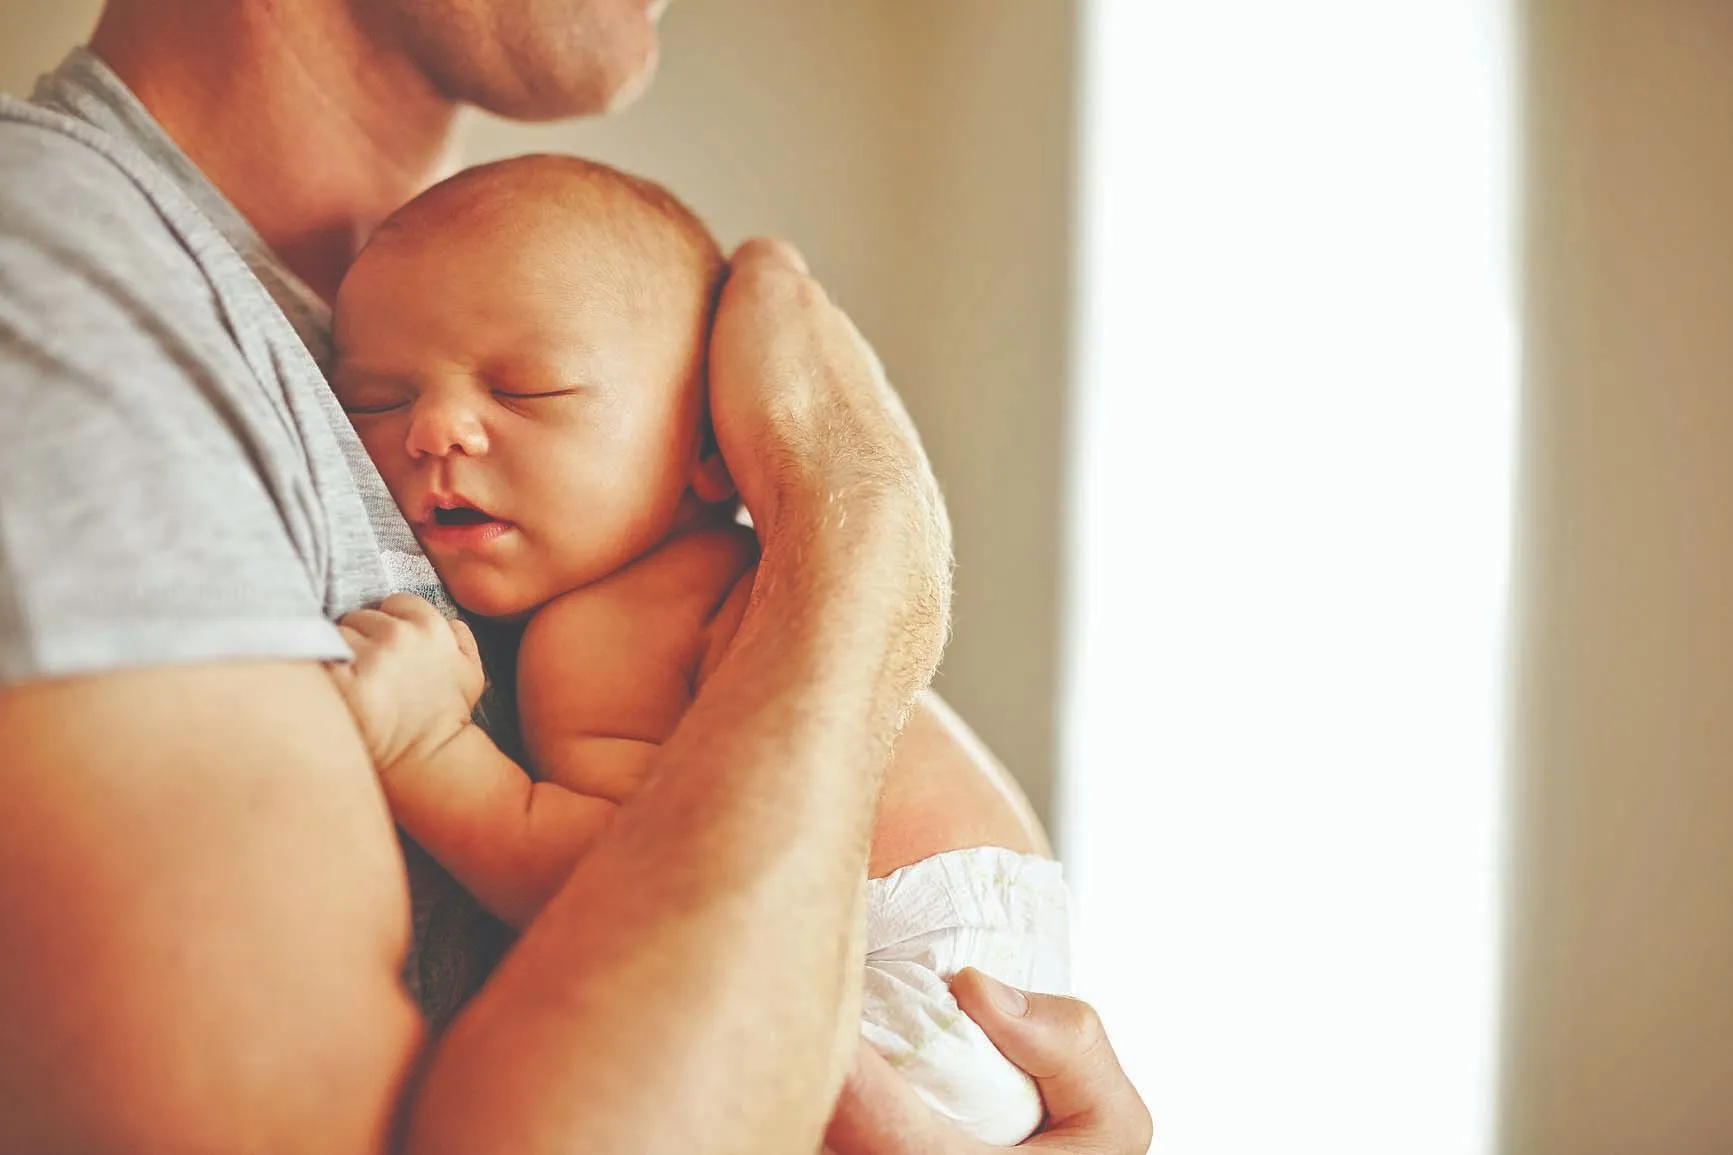 Pai com bebê no colo: CLT garante 5 dias de afastamento após nascimento do filho. Programa amplia para 20